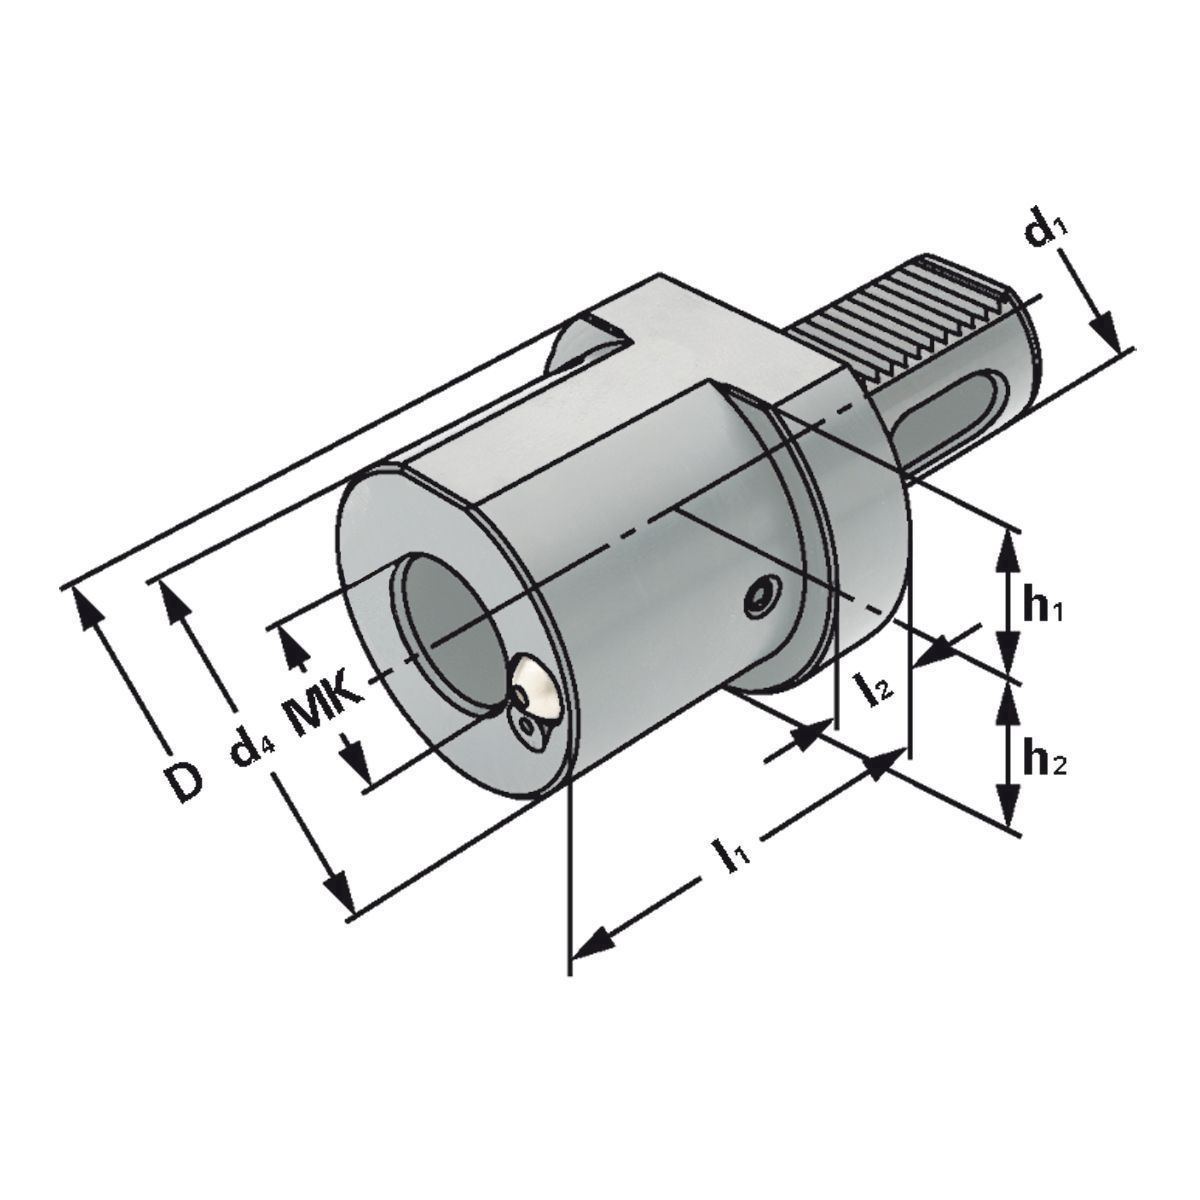 MK-Bohrerhalter F1-50xMK4 DIN 69880 (ISO 10889)